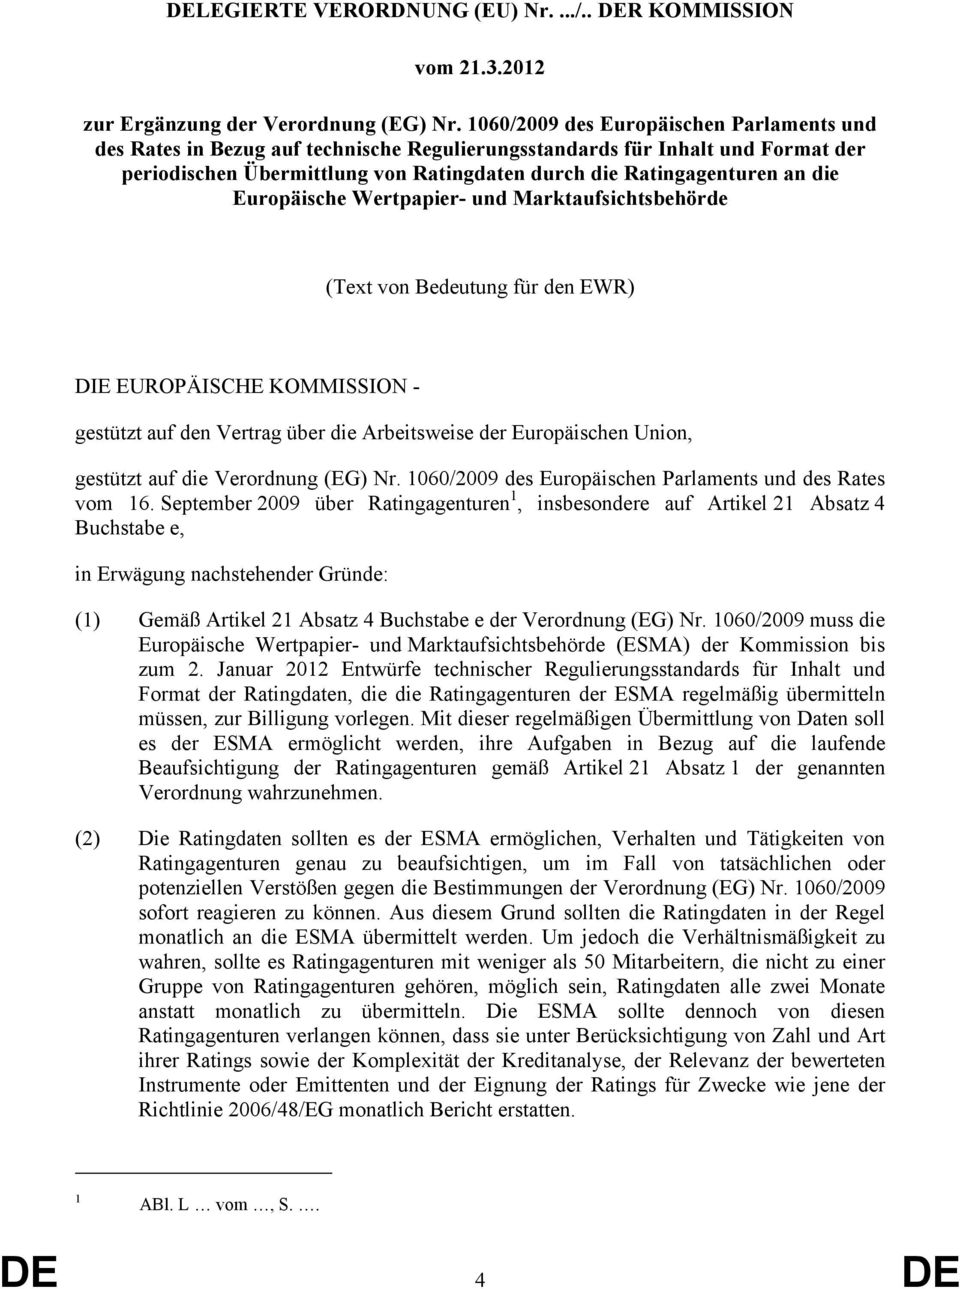 KOMMISSION - gestützt auf den Vertrag über die Arbeitsweise der Europäischen Union, gestützt auf die Verordnung (EG) Nr 1060/2009 des Europäischen Parlaments und des Rates vom 16 September 2009 über